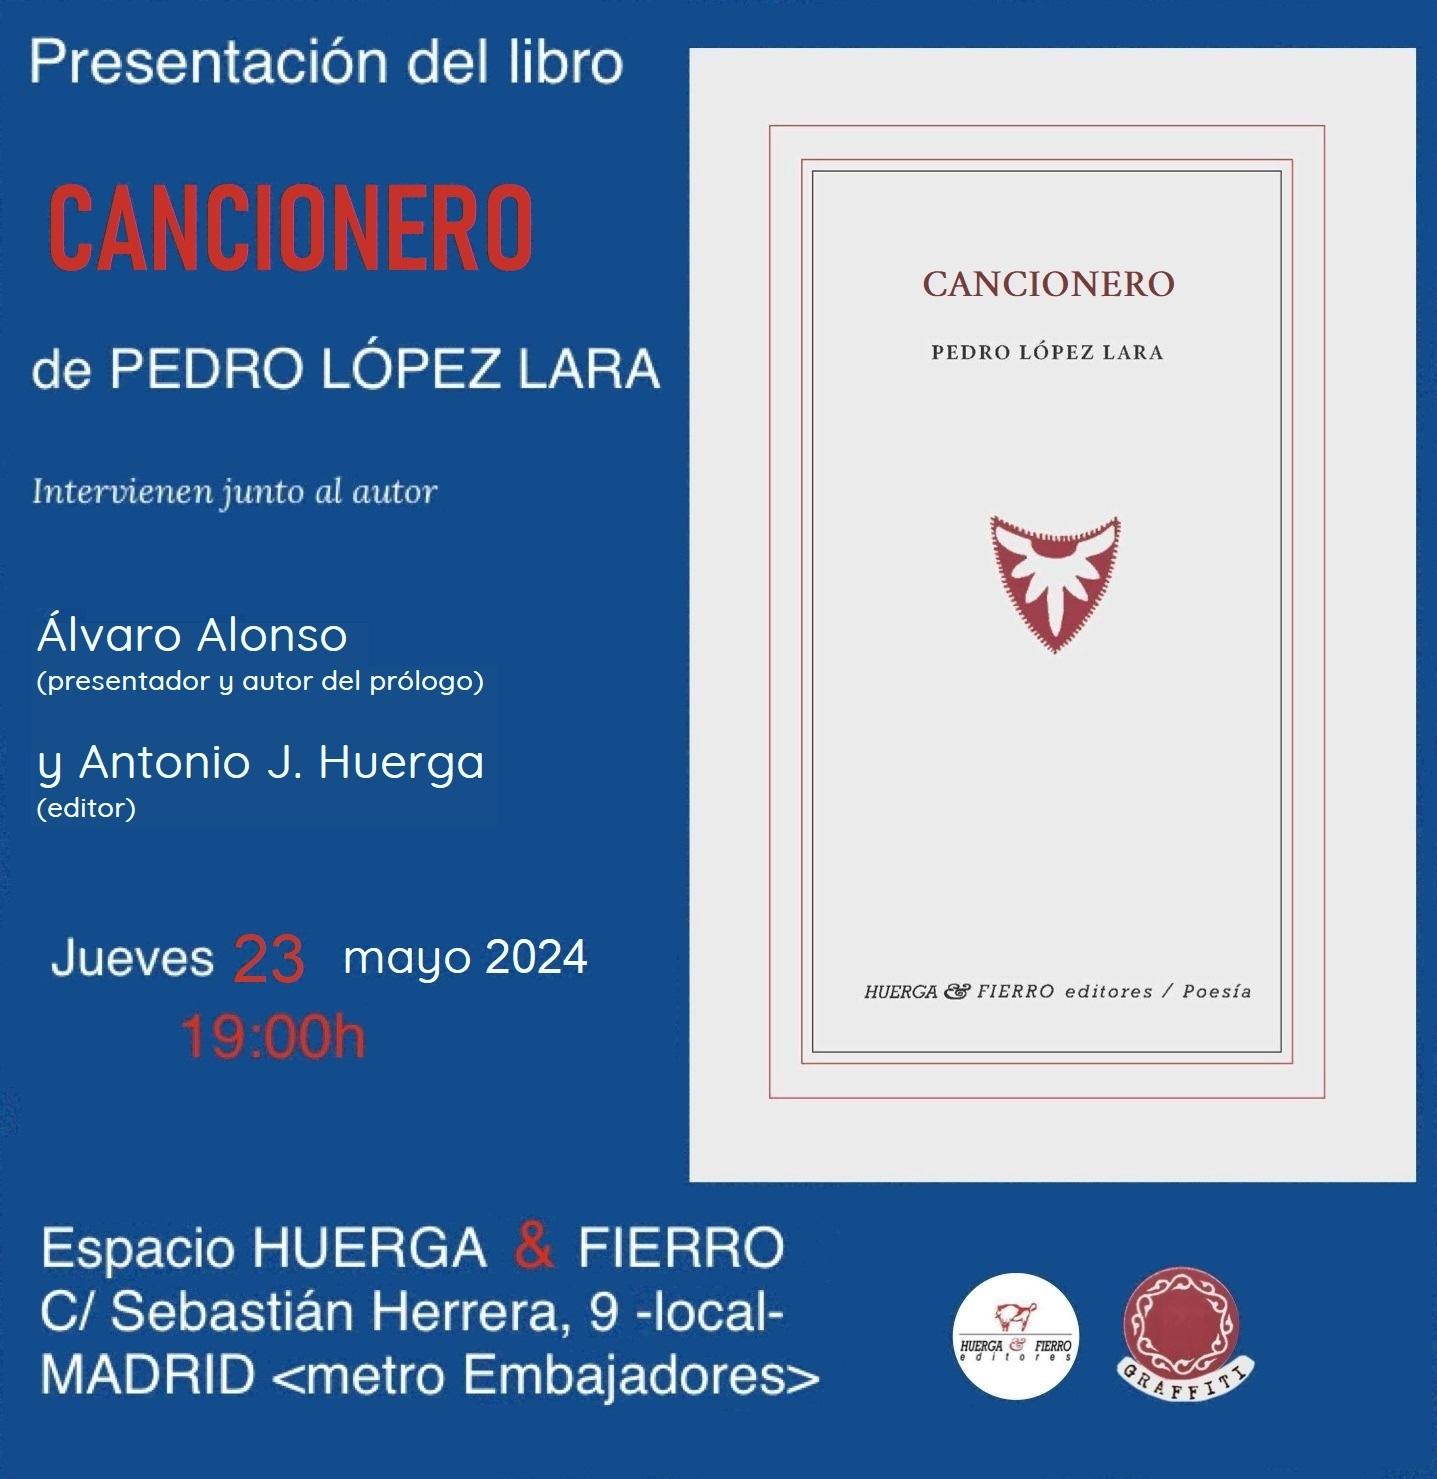 Presentación de ‘Cancionero’ de Pedro López Lara en Madrid. 23 de mayo